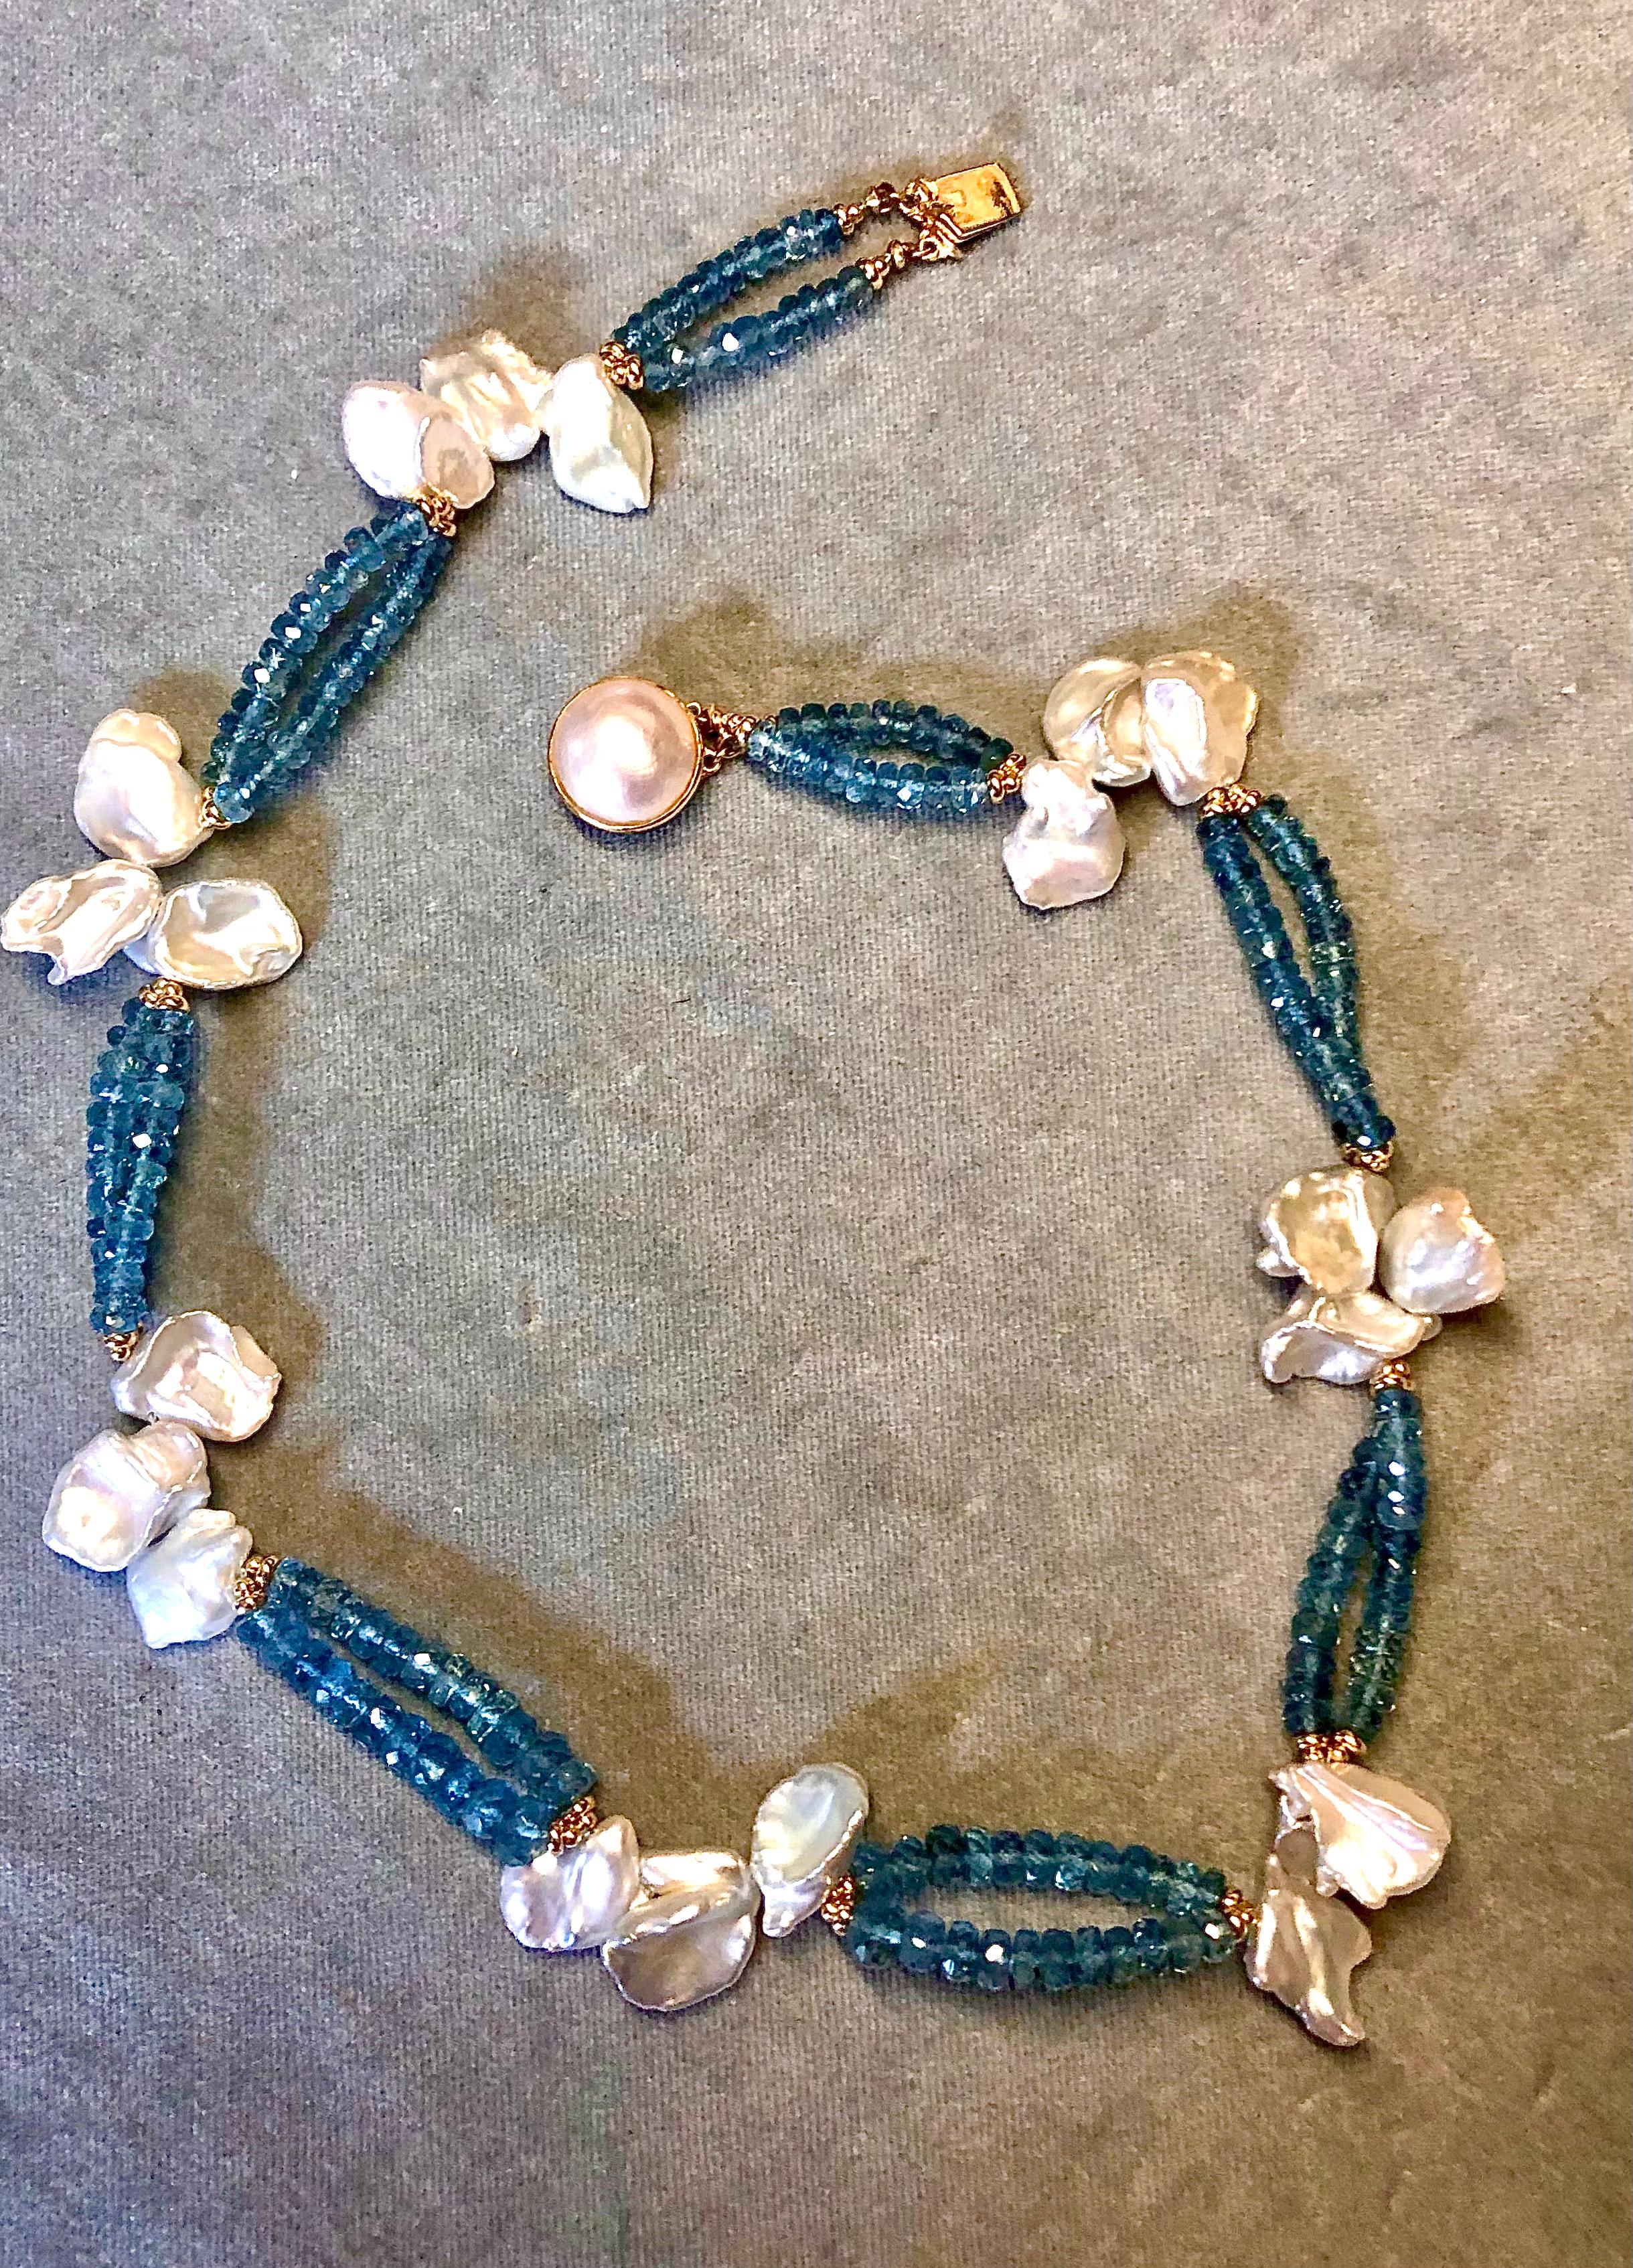 Doppelstrang-Halskette aus Santa Maria tiefblau  Aquamarin-Rondellen mit sehr glänzenden großen weißen Barock-Keishi-Perlen, flankiert von glatten Rondellen aus 14kt Gelbgold. Mit feiner Mabe-Perle und 14-karätigem Gelbgold-Verschluss. 16